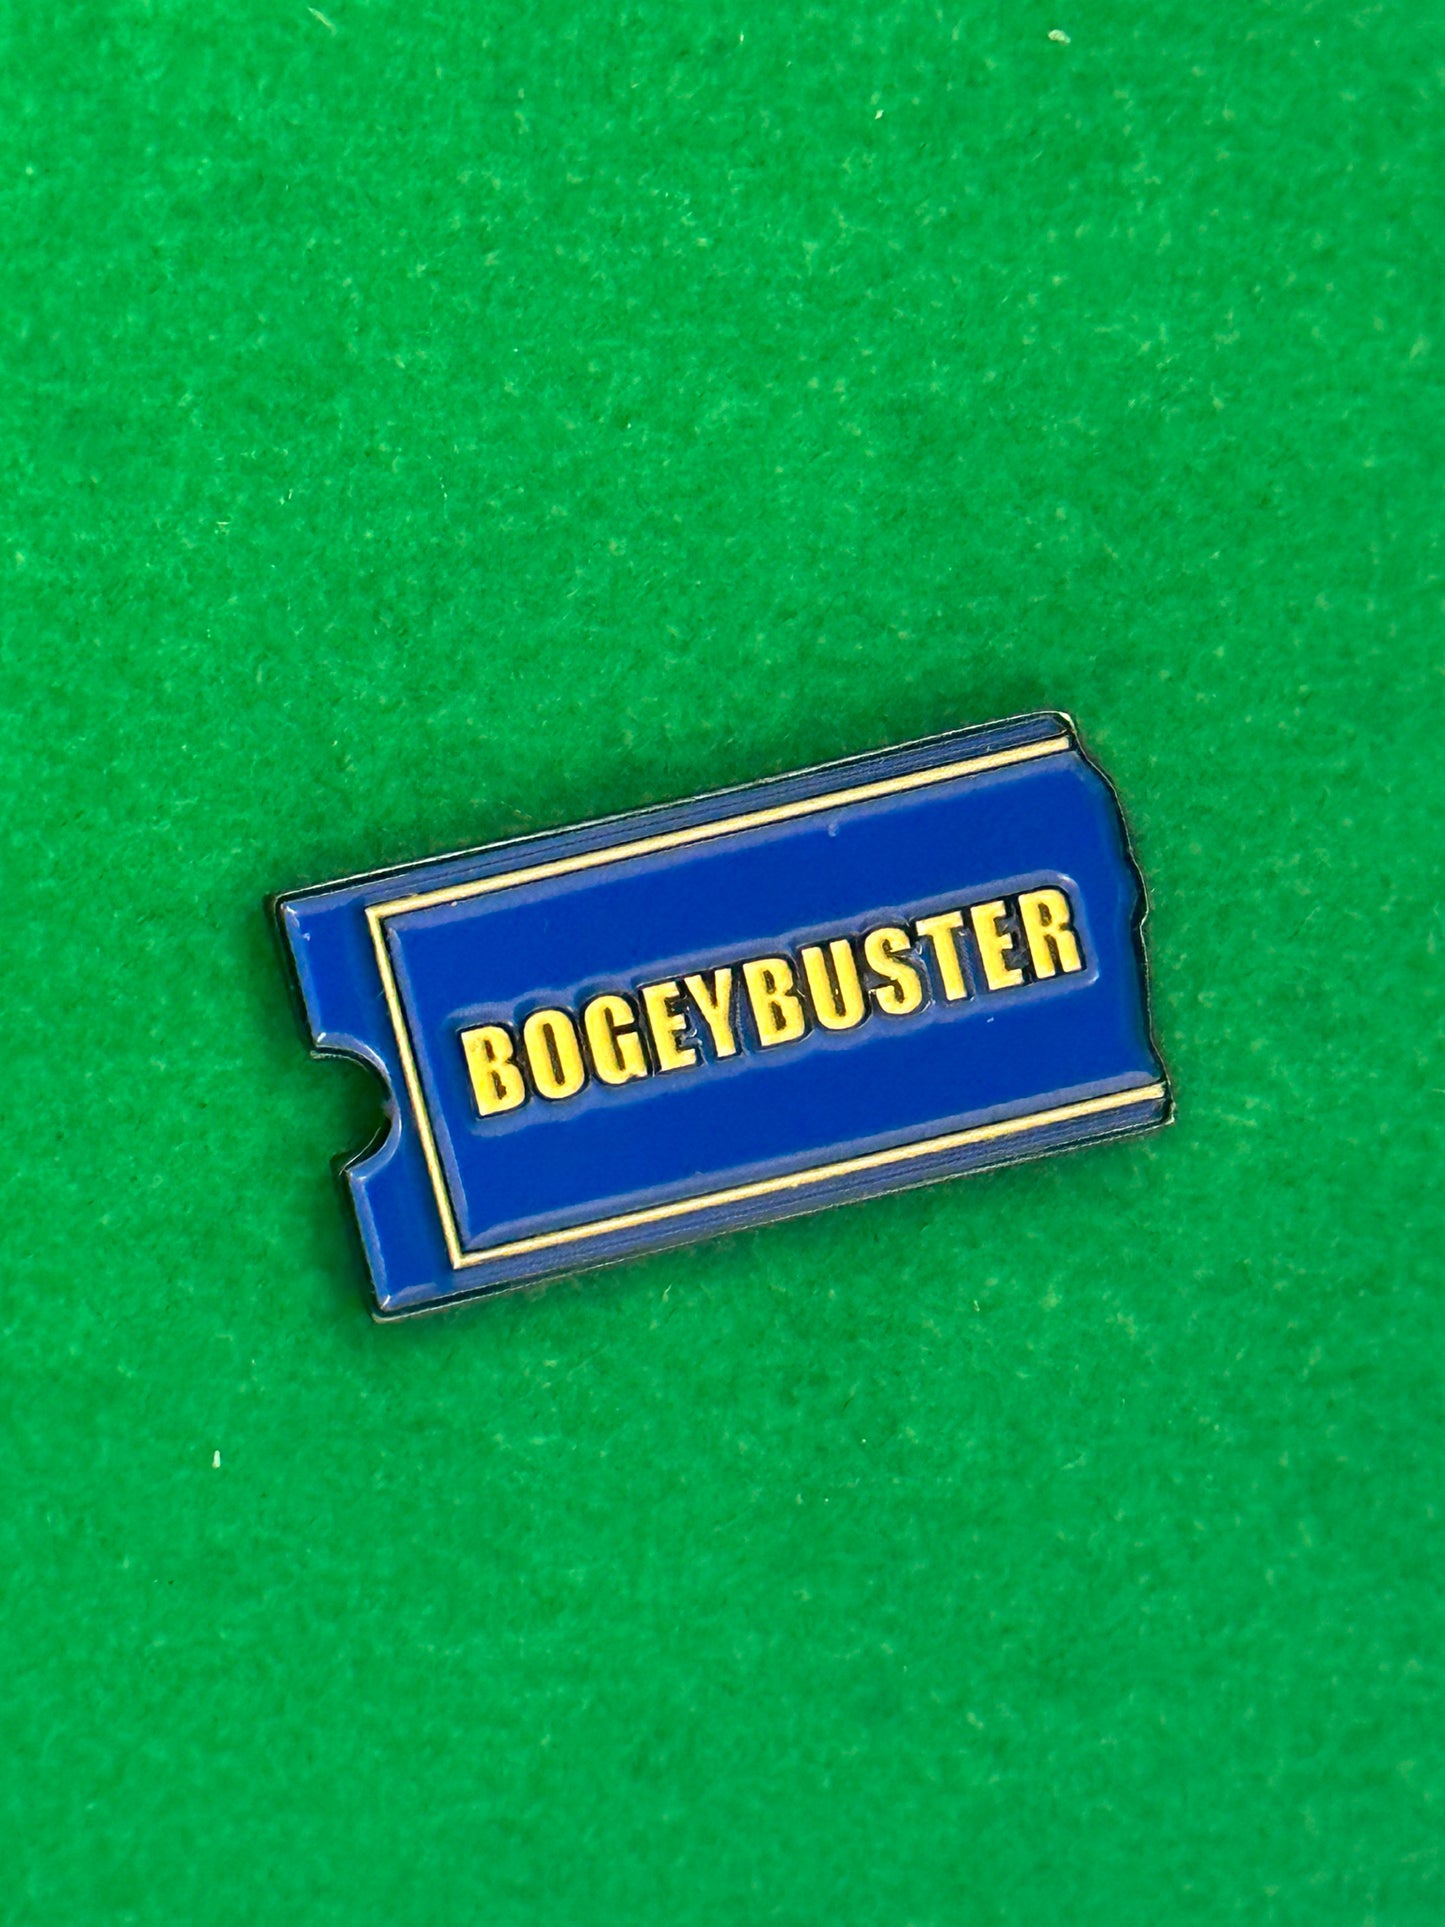 BogeyBuster